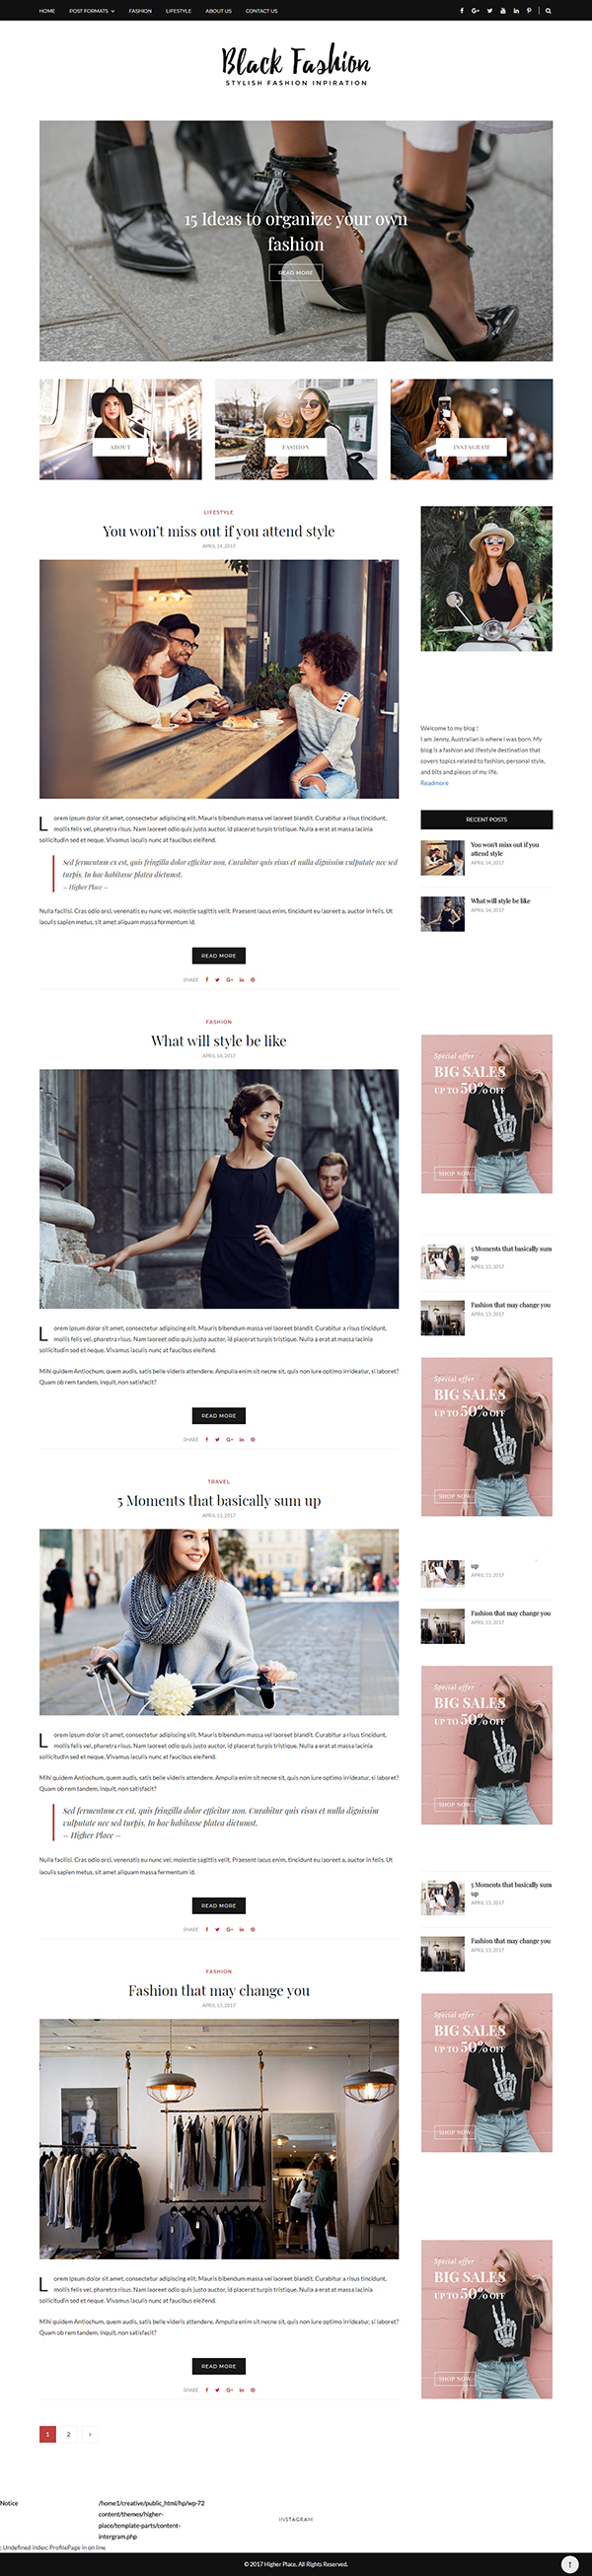 Black Fashion - WordPress Blog Theme